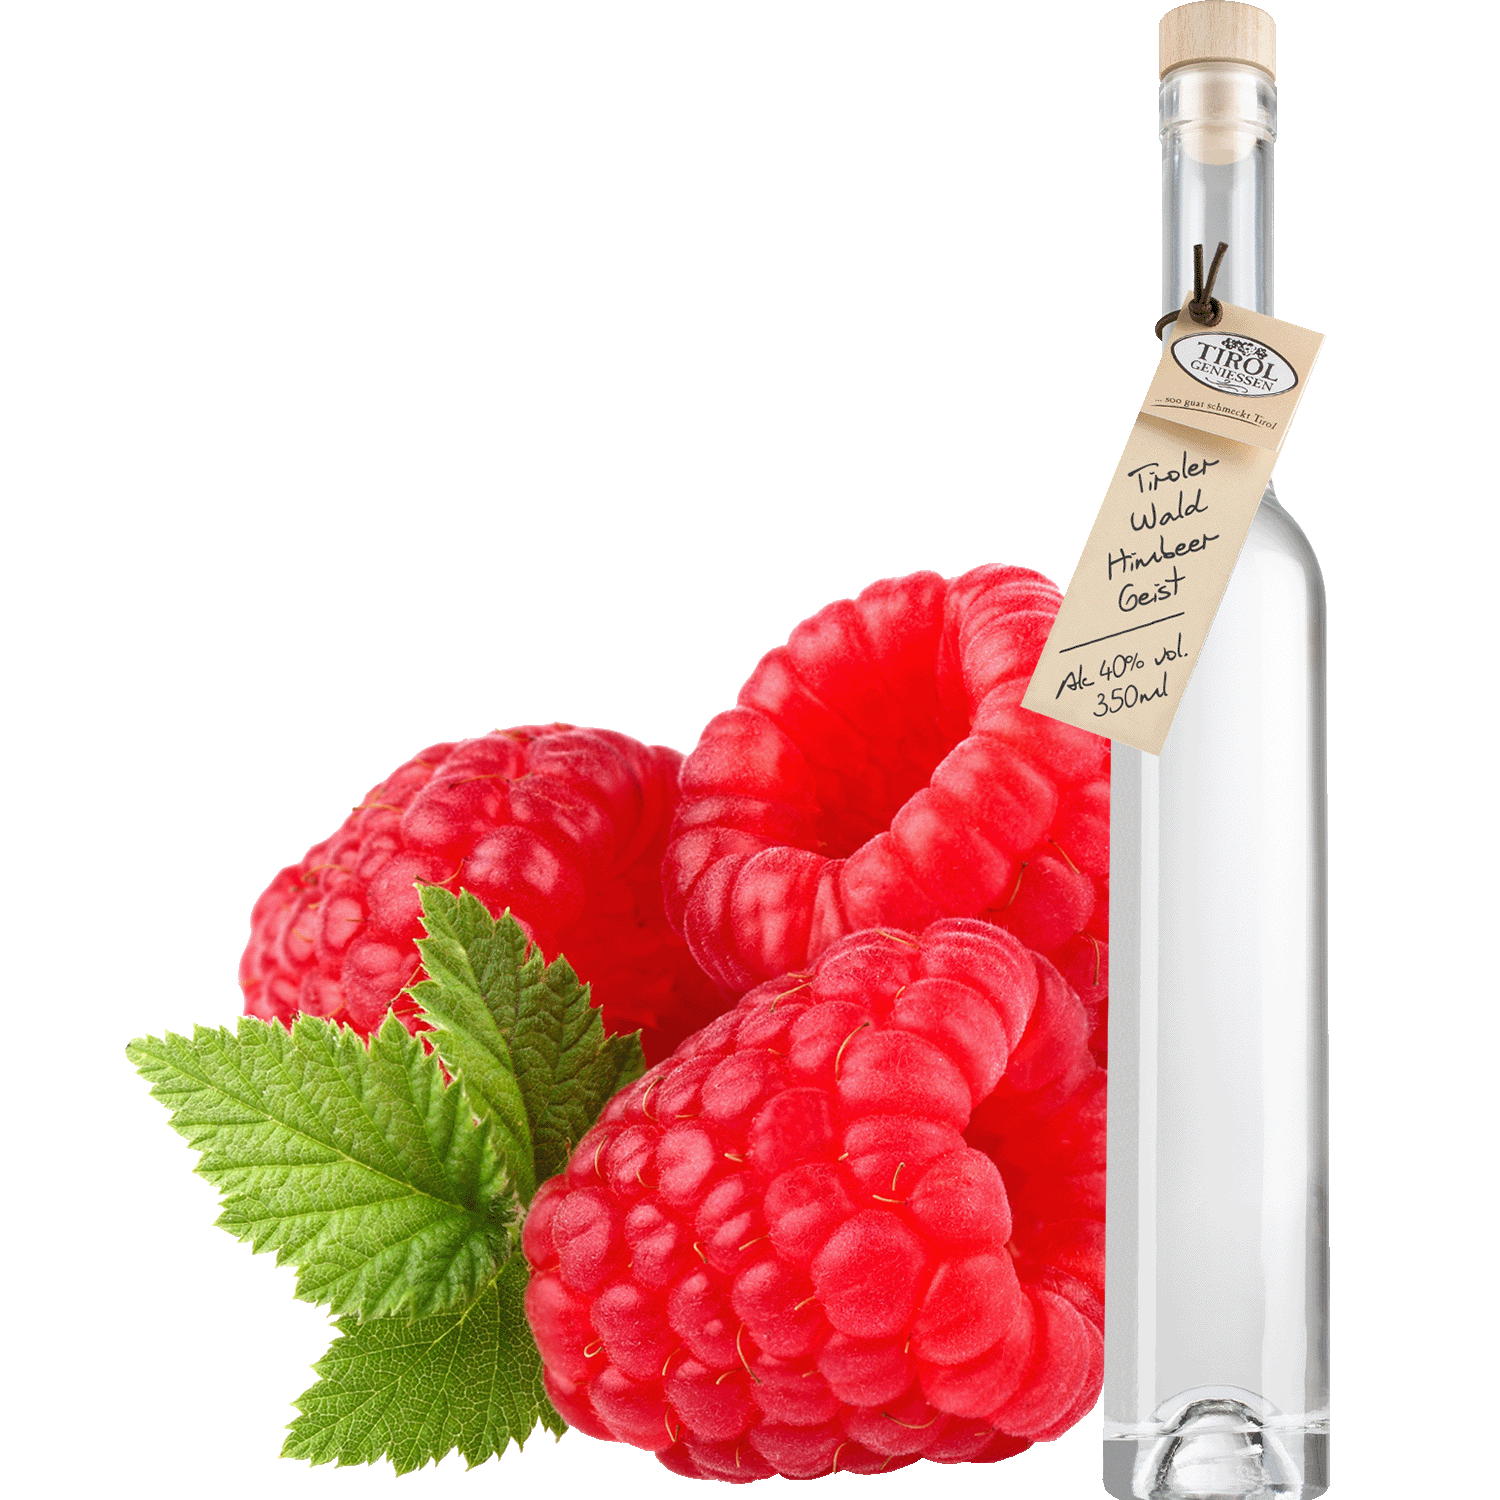 Wild Raspberry Spirit in gift bottle from Austria from Tirol Geniessen